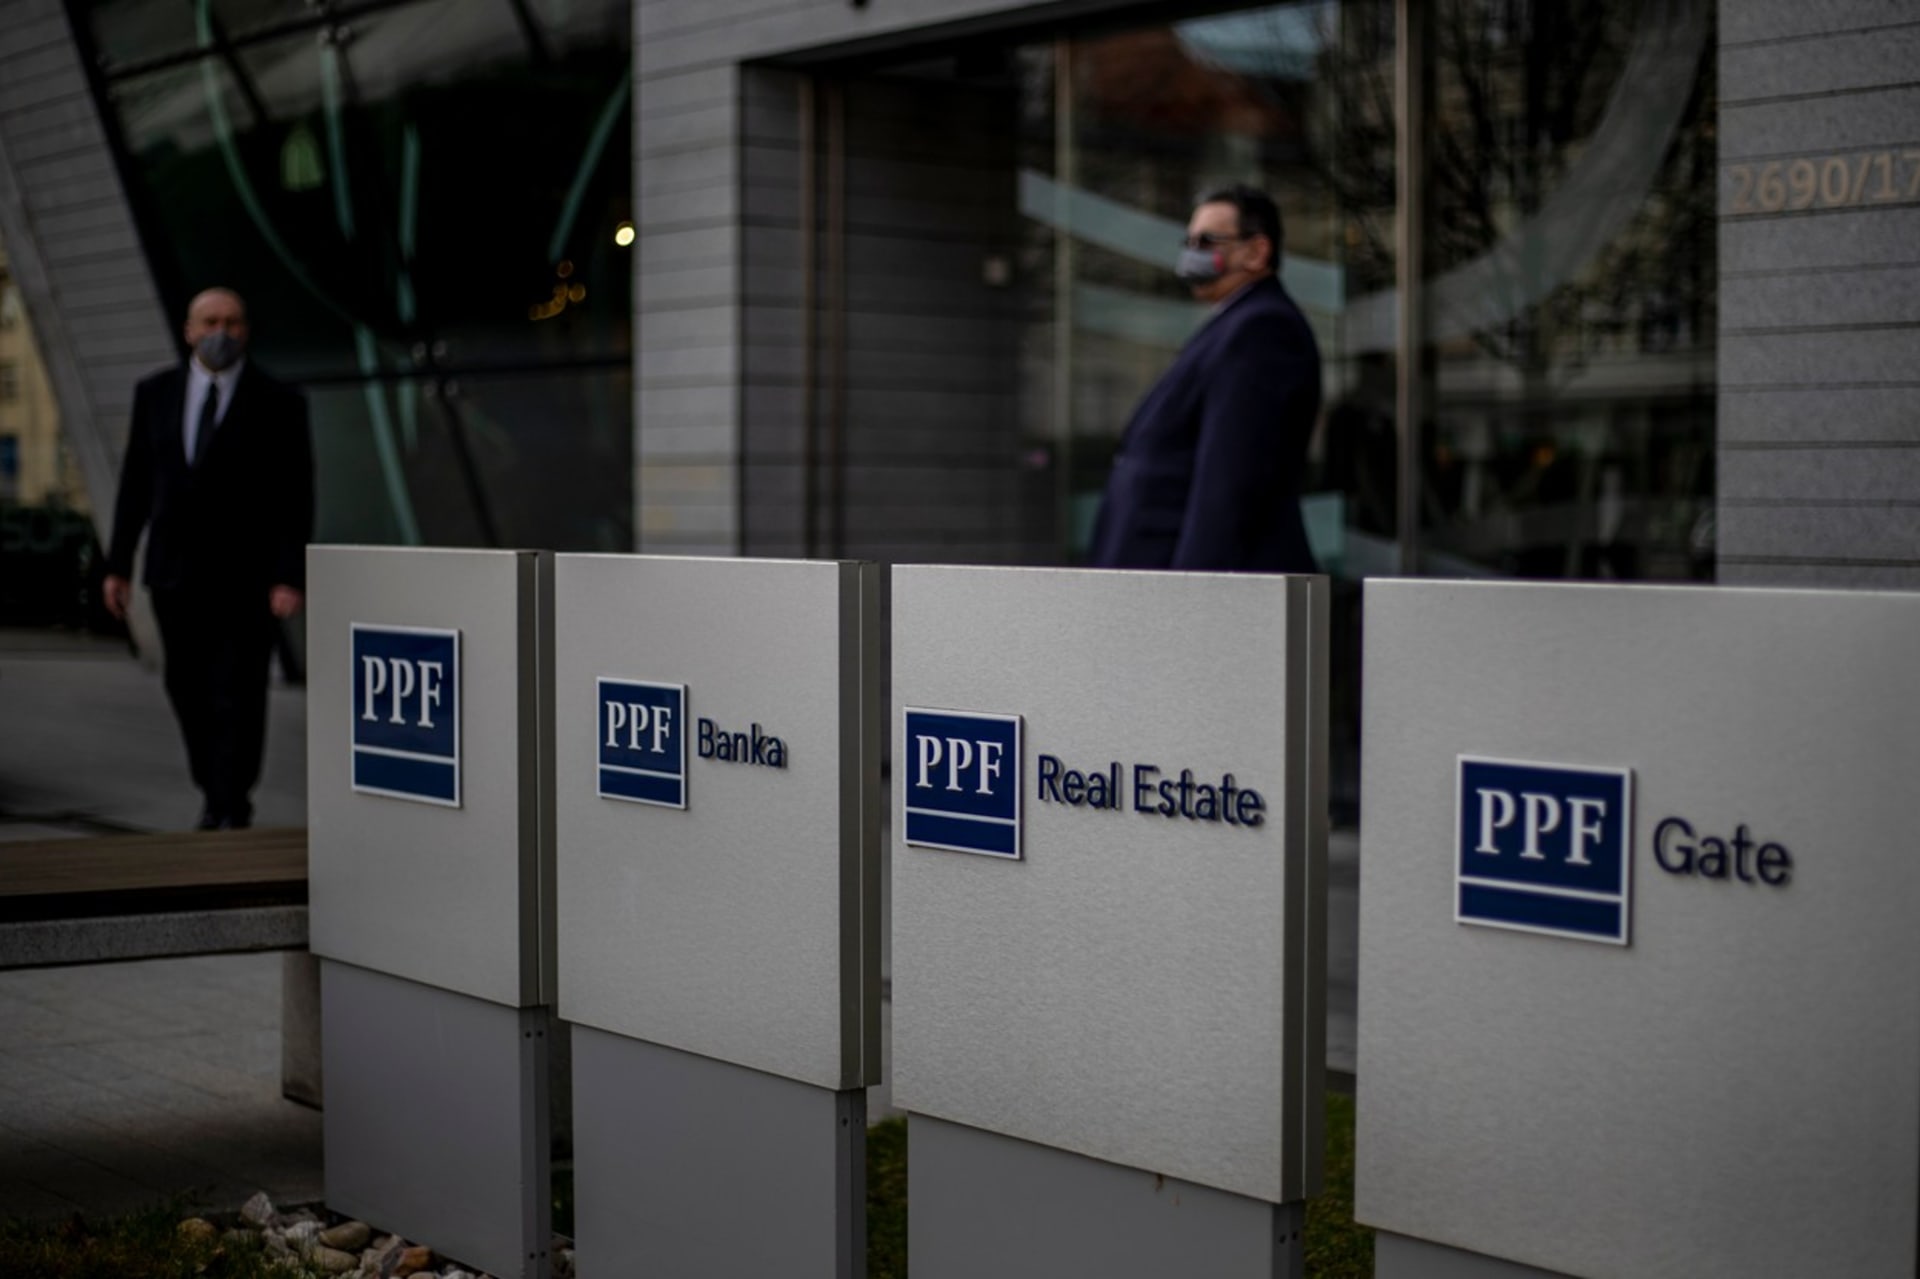 PPF Group patří k významným nadnárodním holdingům. Jeho podnikání zasahuje prakticky do všech odvětví ekonomiky